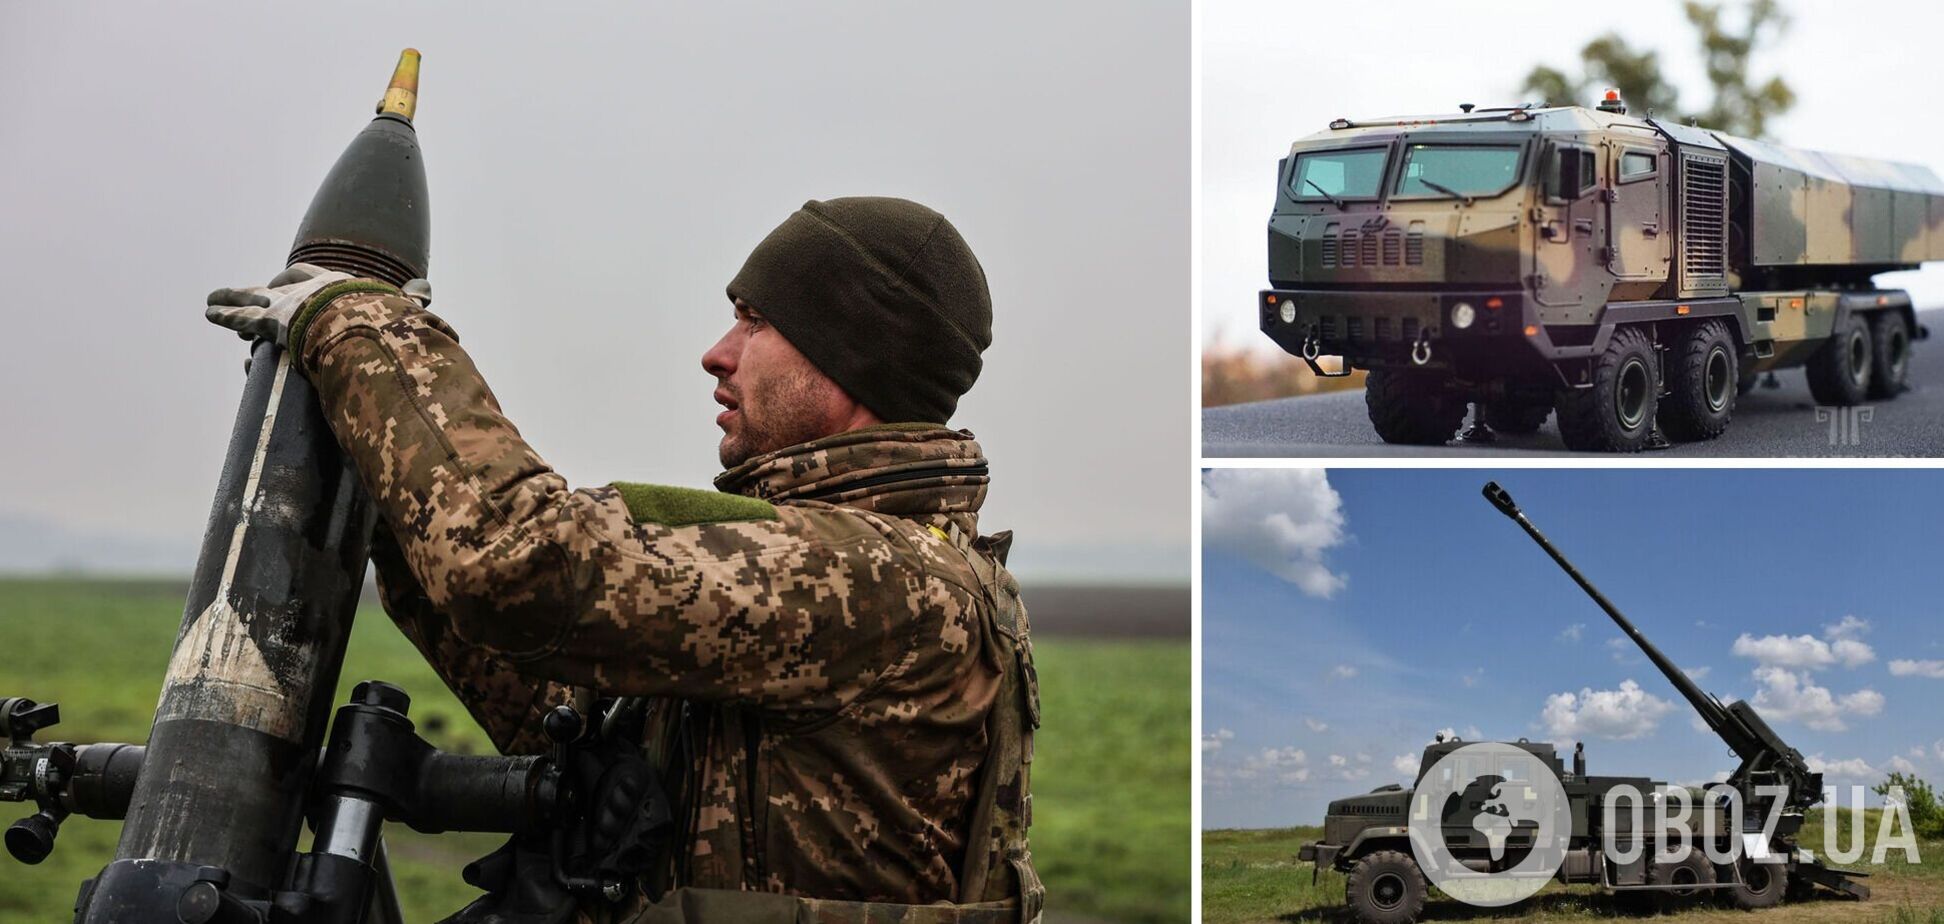 Украинские минометы, 'Вільха' и 'Богдана' вполне способны стать оружием нашей победы, полковник – Баранов